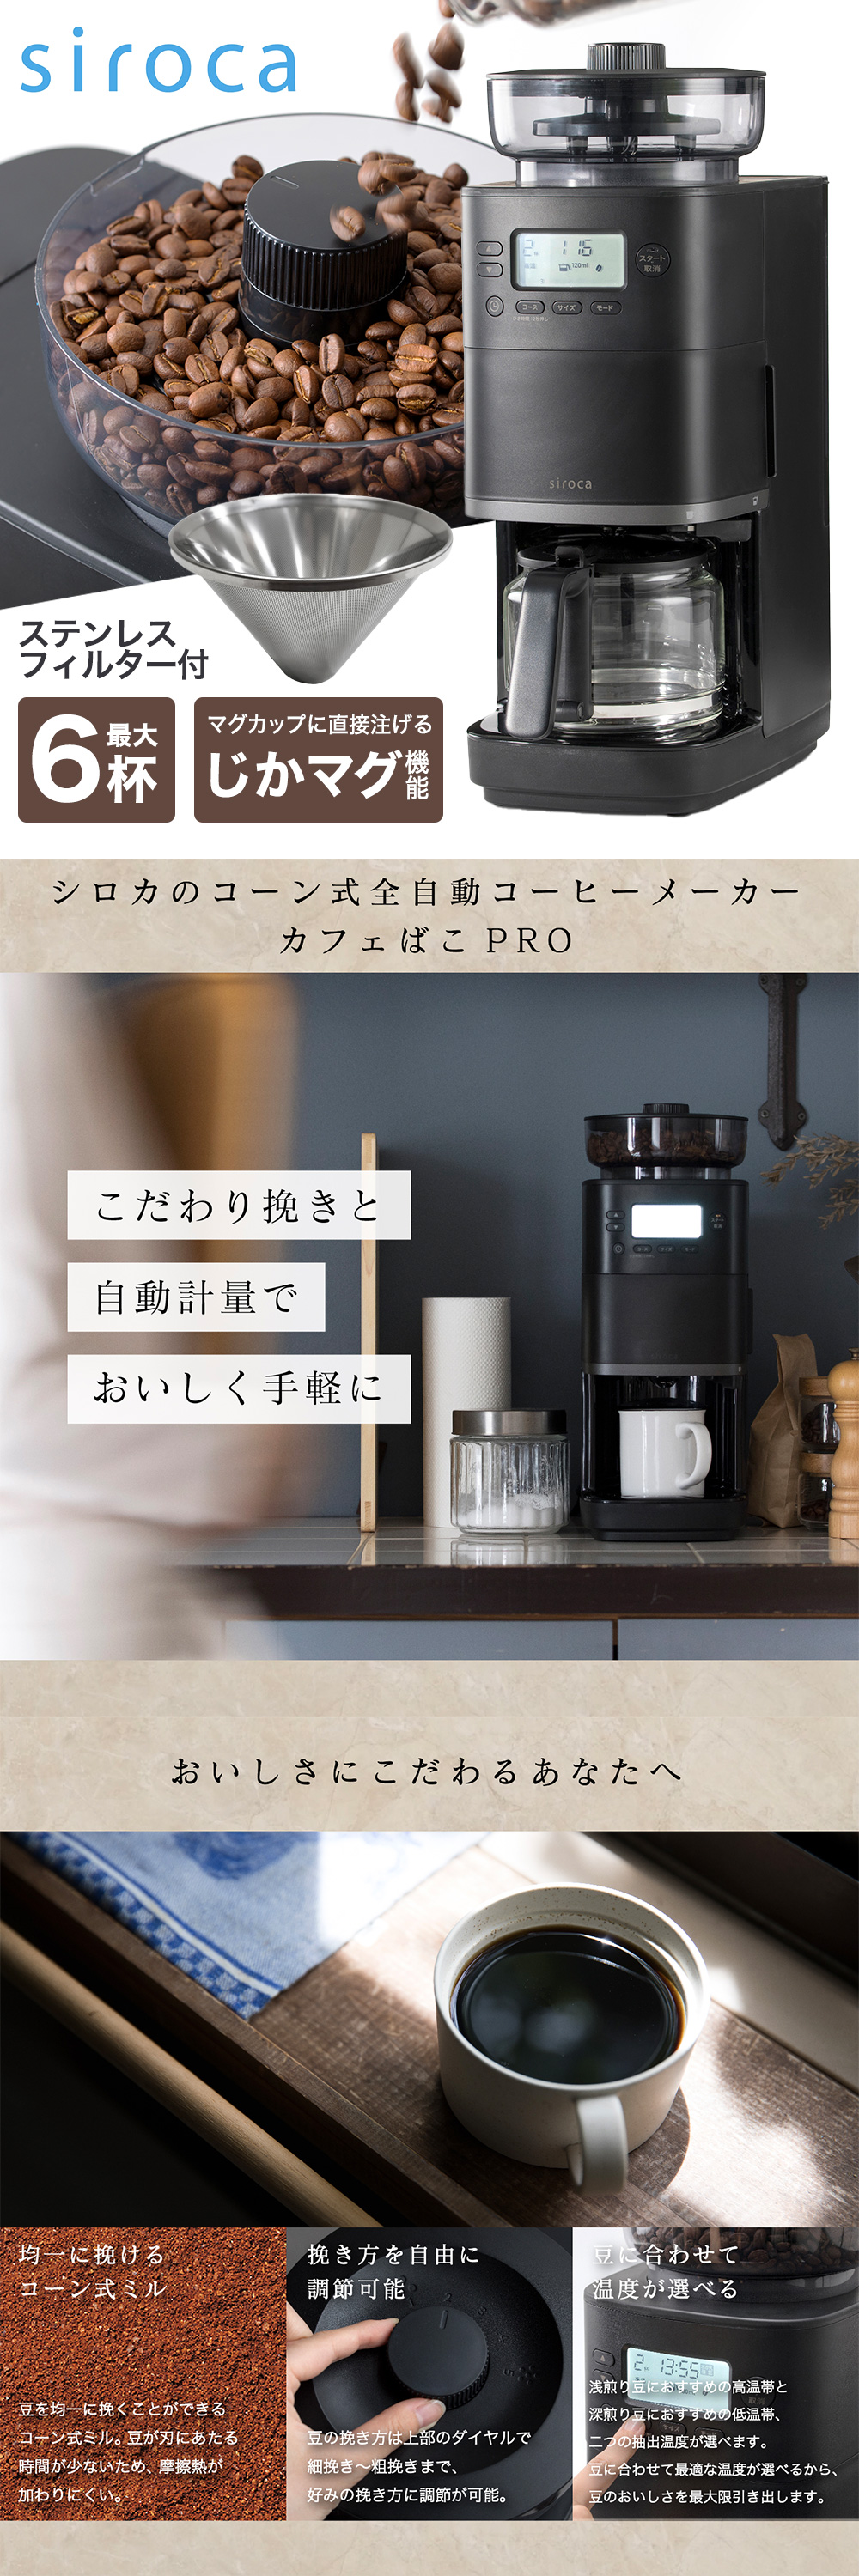 コーヒーメーカー シロカ カフェばこPRO CM-6C261K 全自動 コーン式 